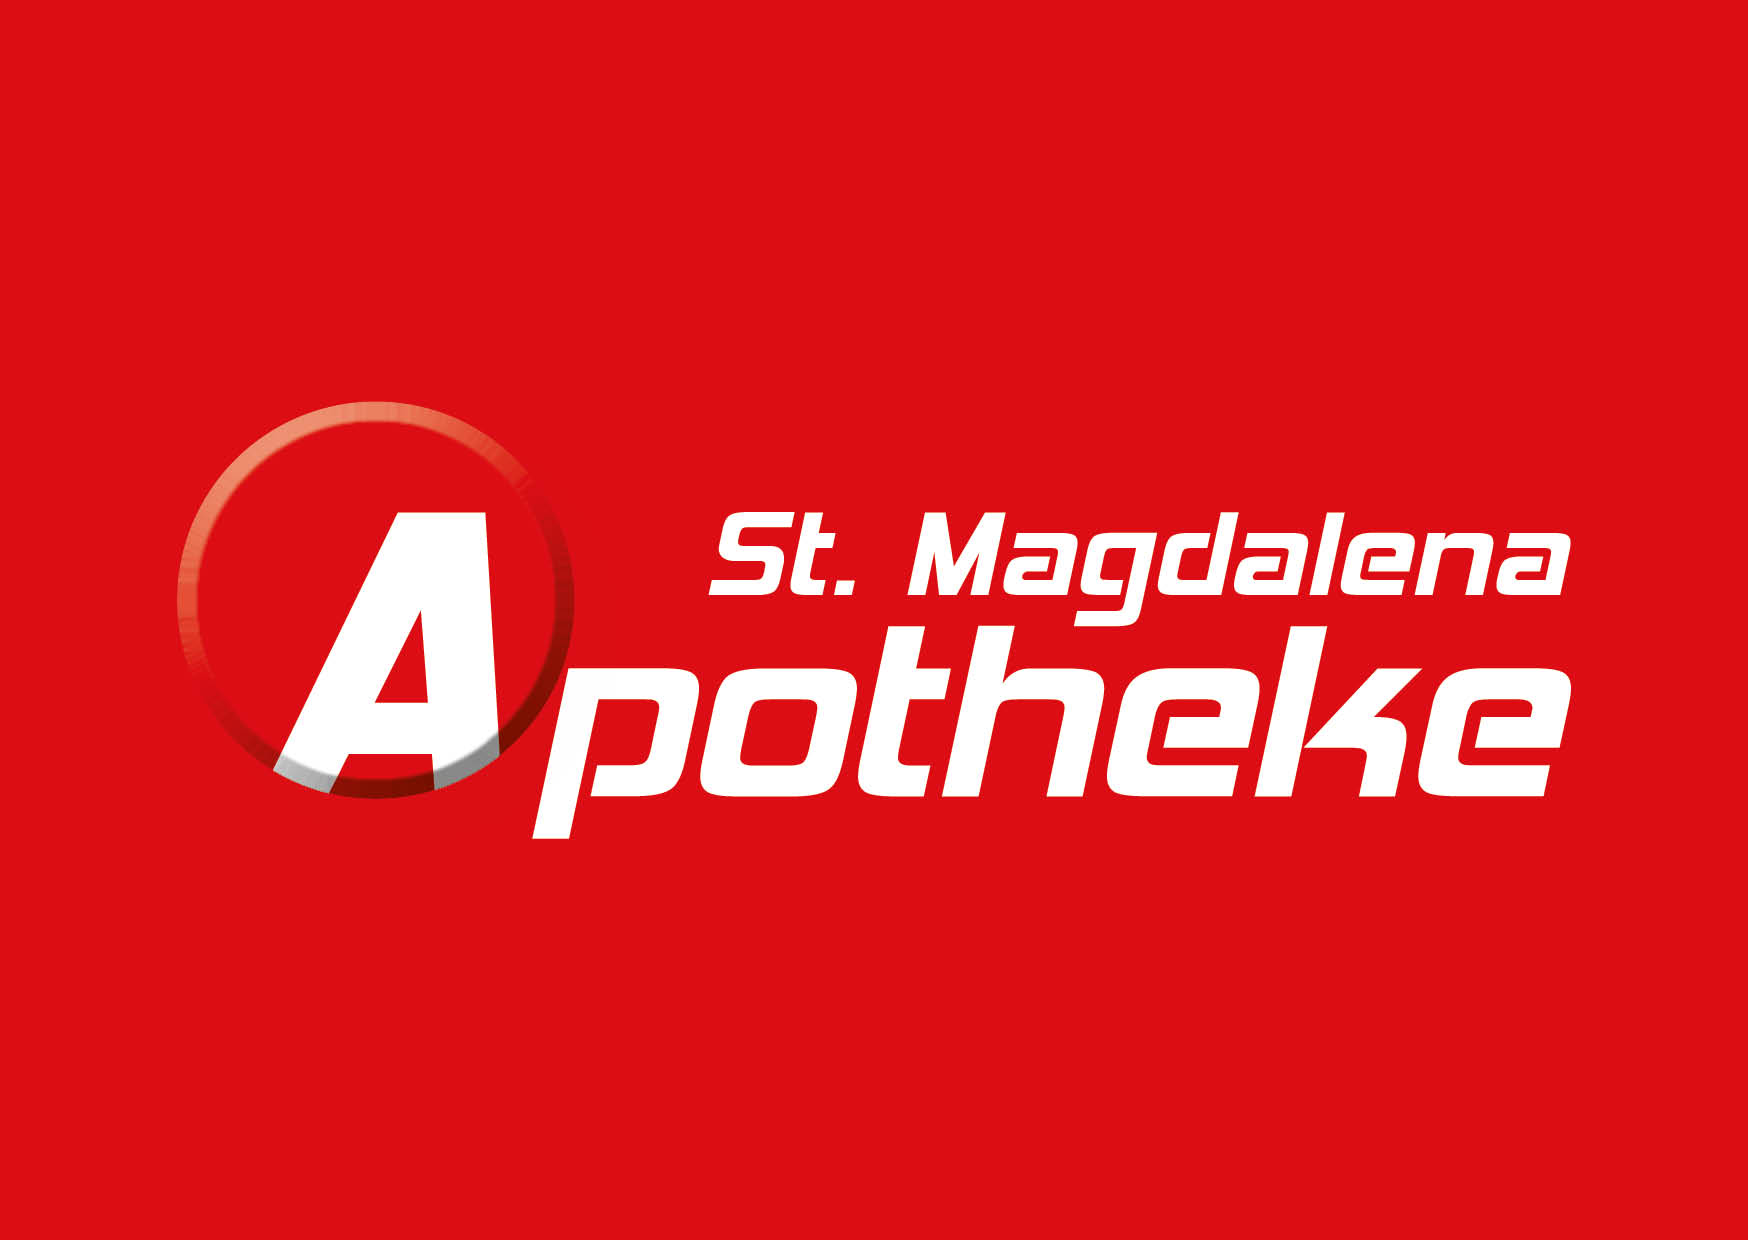 St. Magdalena Apotheke Mag. Eder KG